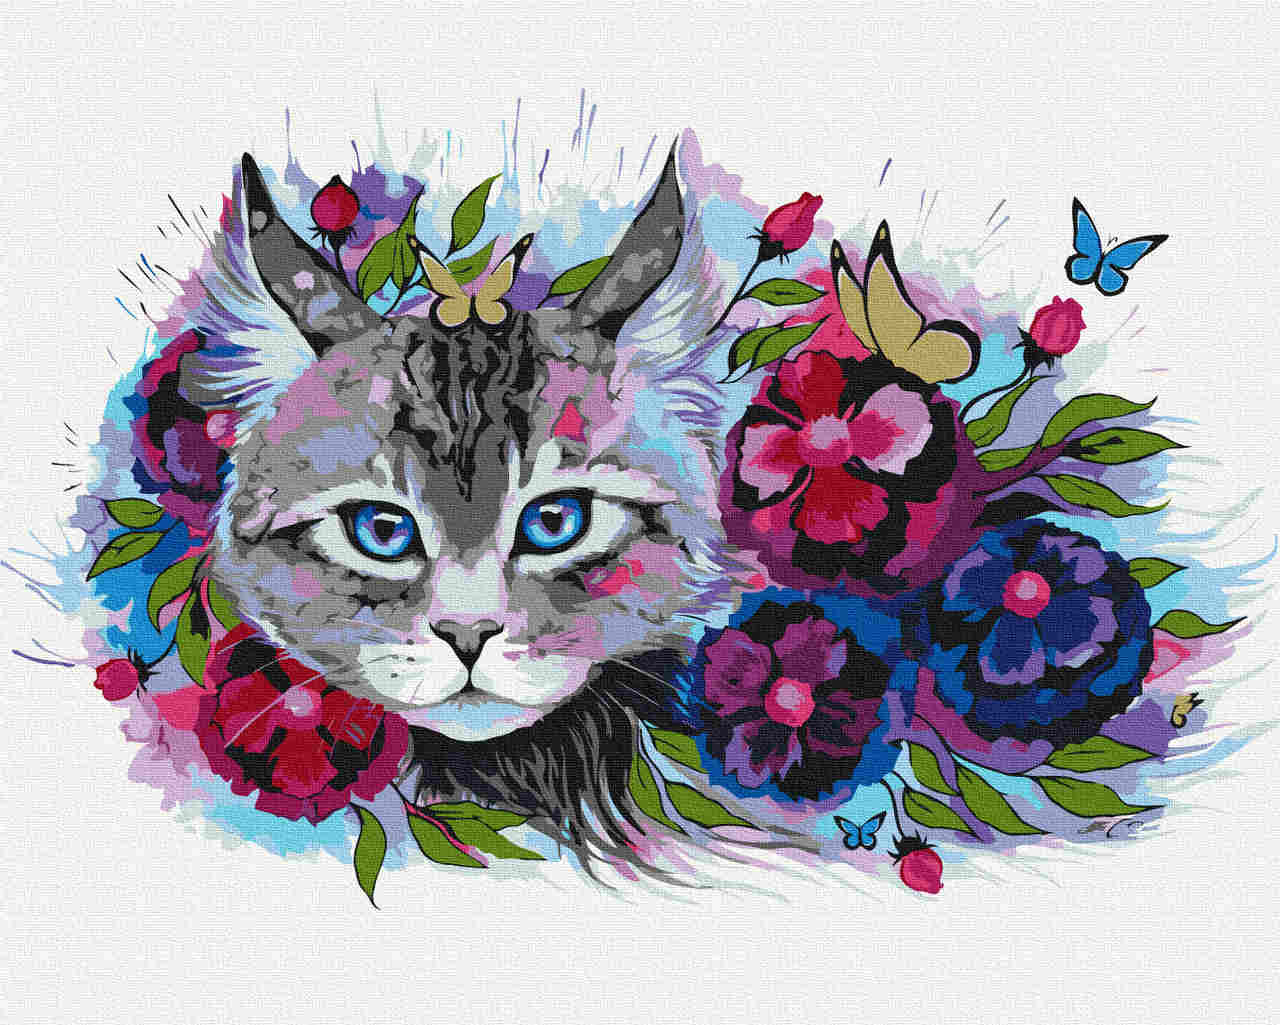 Malen nach Zahlen - cat flowers - by Pixie Cold, mit Rahmen von Pixie Cold